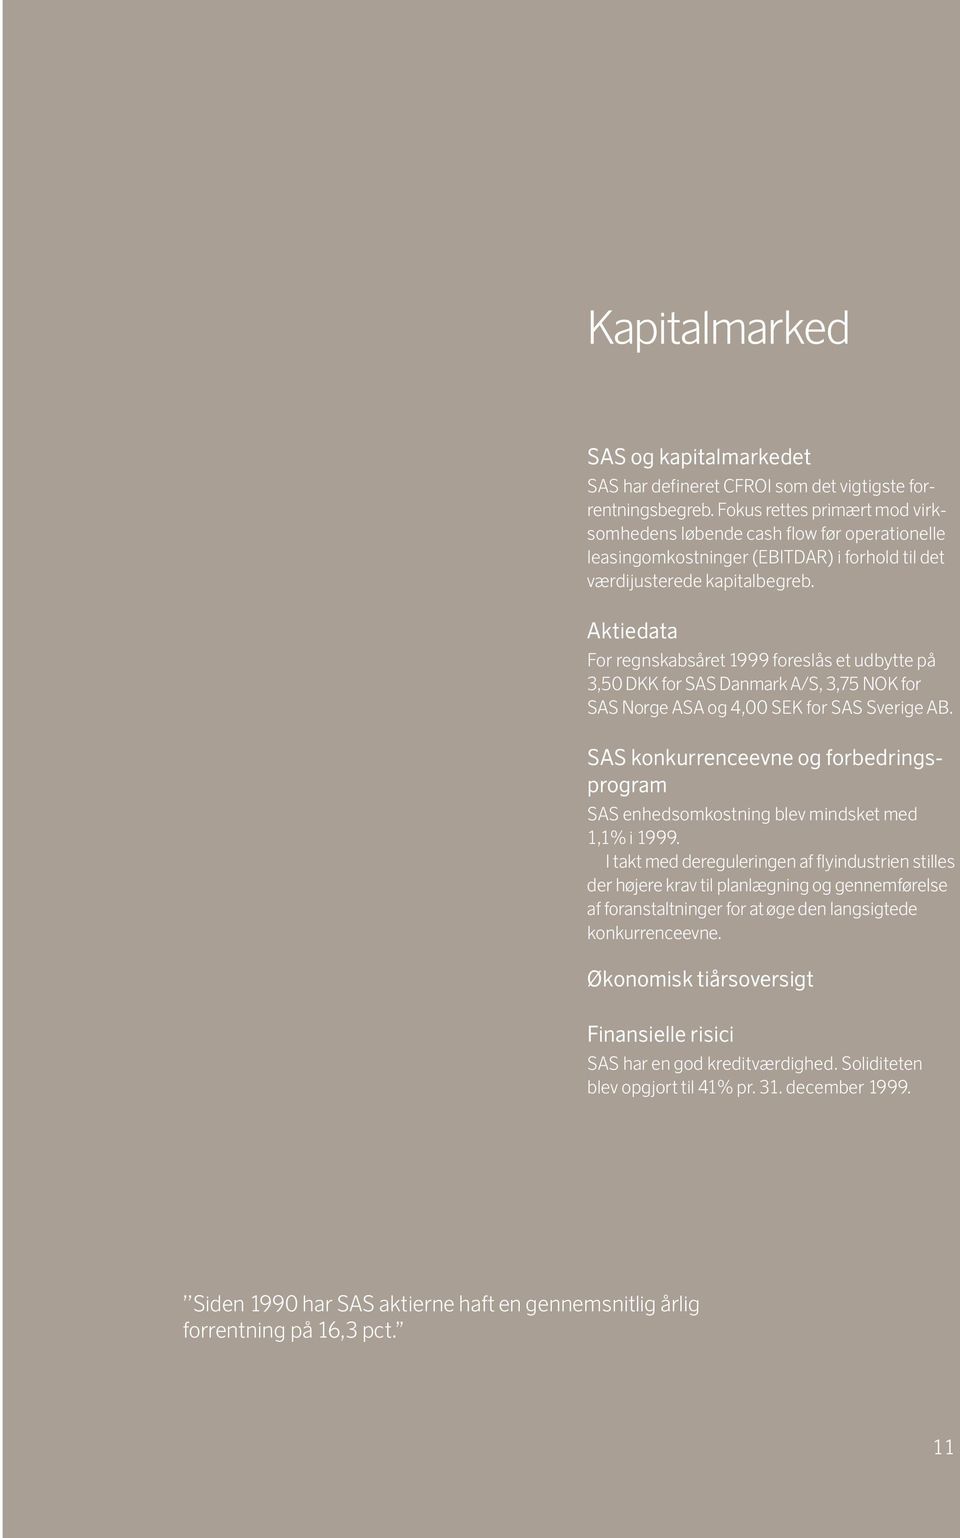 Aktiedata For regnskabsåret 1999 foreslås et udbytte på 3,50 DKK for SAS Danmark A/S, 3,75 NOK for SAS Norge ASA og 4,00 SEK for SAS Sverige AB.